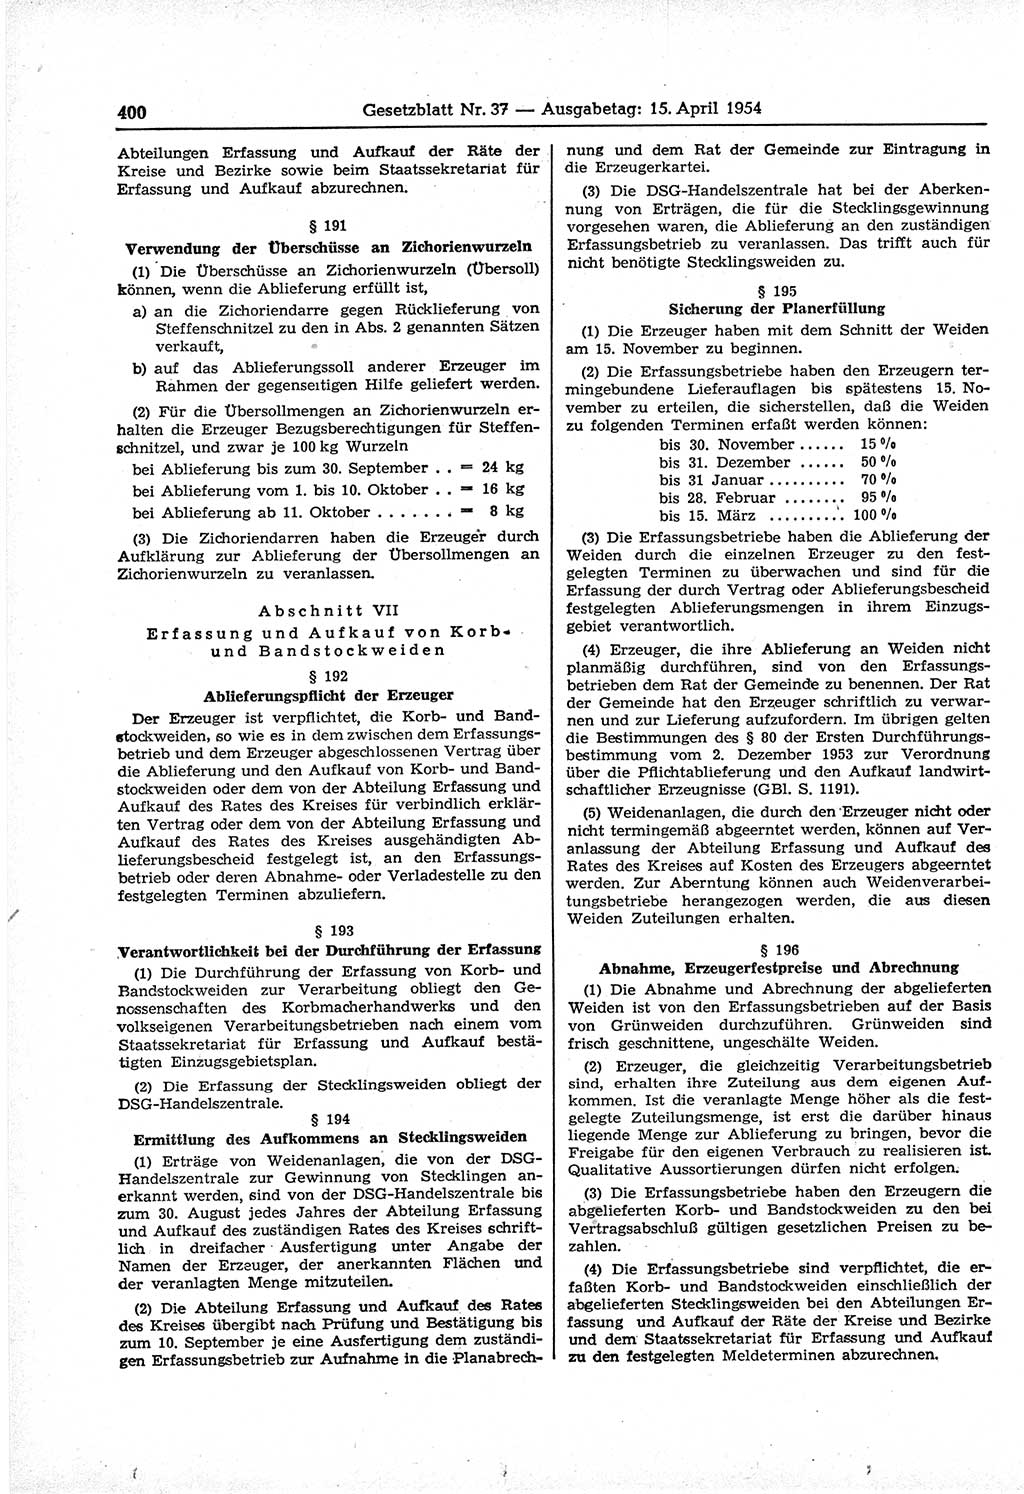 Gesetzblatt (GBl.) der Deutschen Demokratischen Republik (DDR) 1954, Seite 400 (GBl. DDR 1954, S. 400)